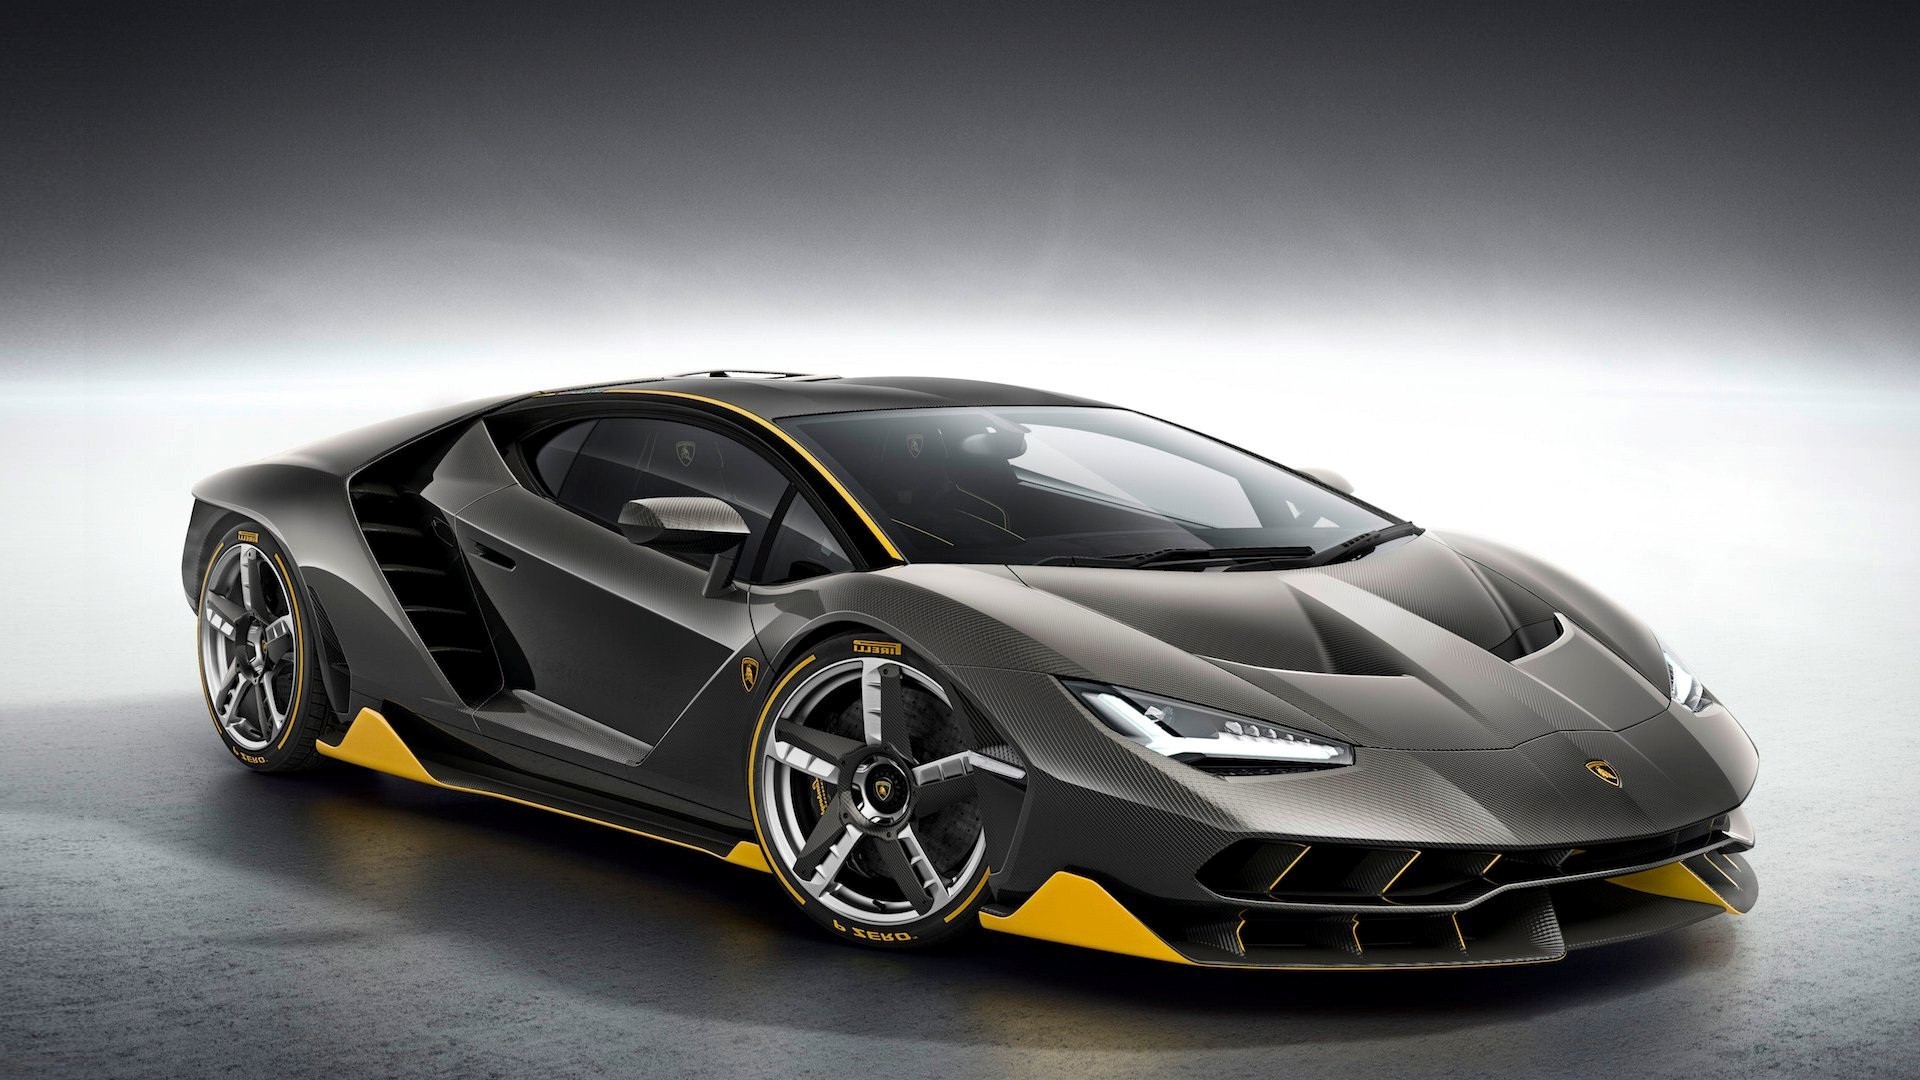 1920x1080  6162 Views 5248 Download New Lamborghini Centenario 2016 Car HD  Wallpapers